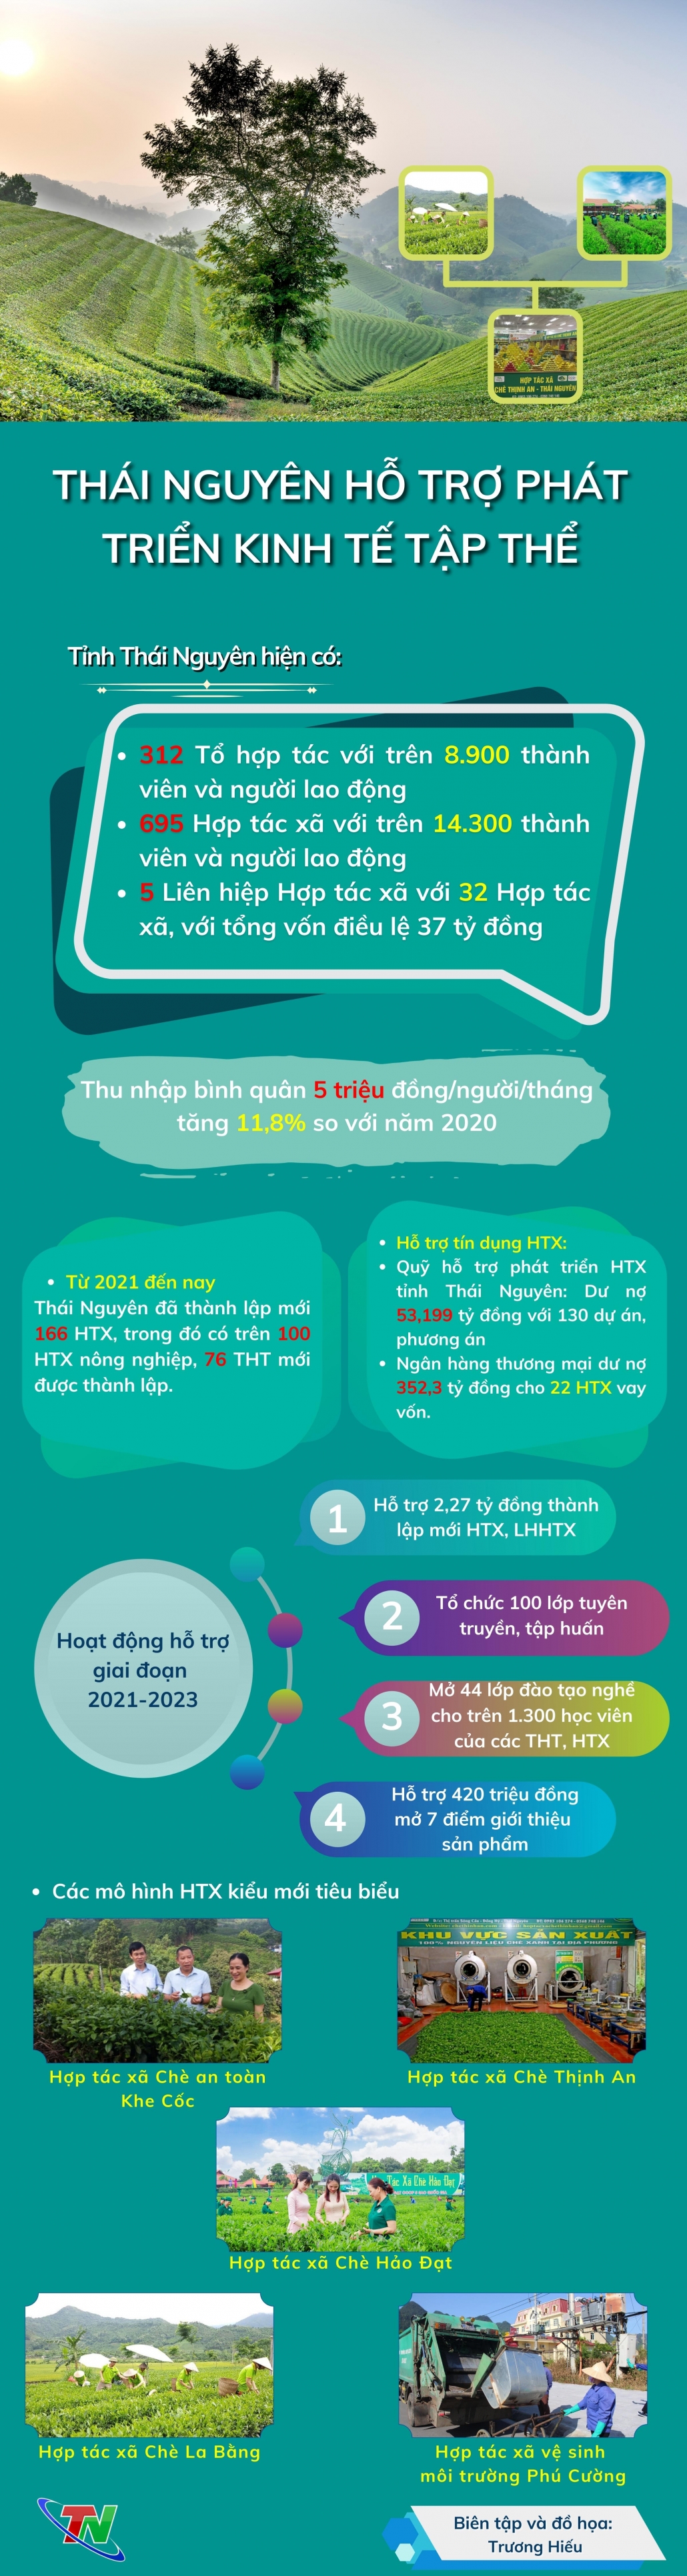 [Infographic] Thái Nguyên thúc đẩy phát triển kinh tế tập thể